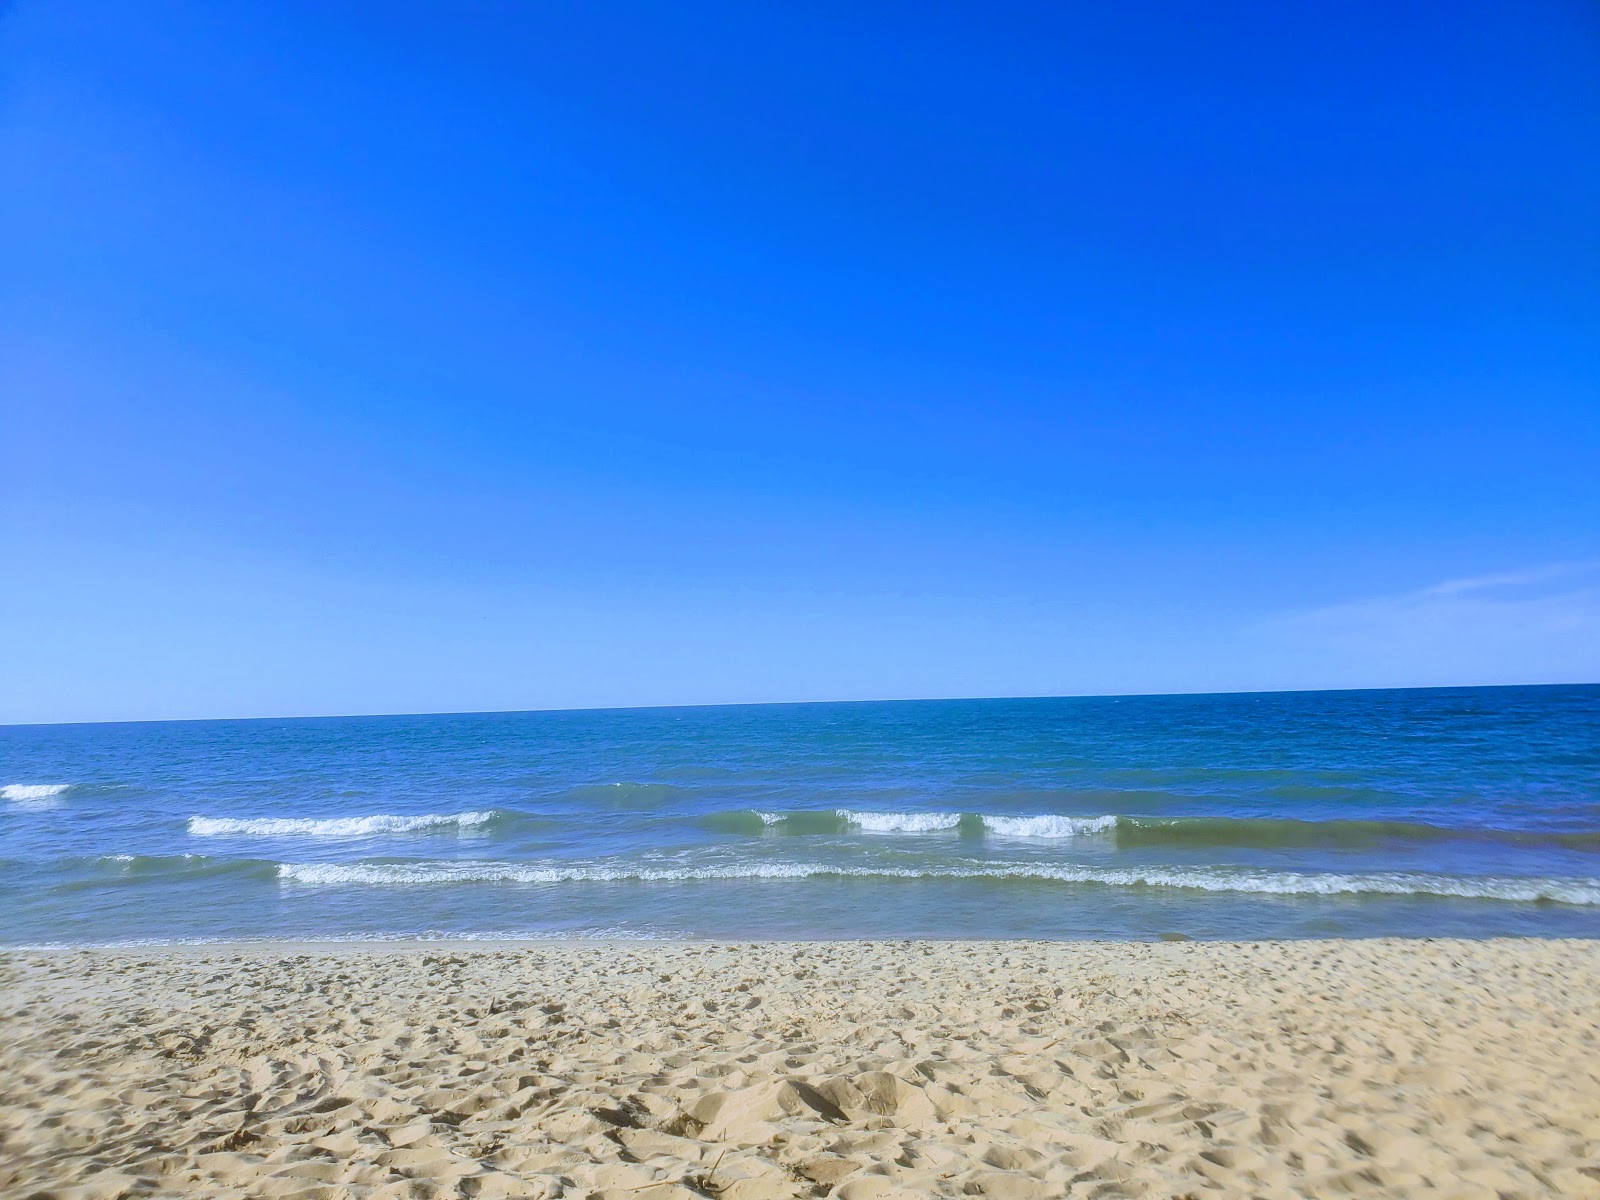 Foto de Philp County Park Beach - lugar popular entre los conocedores del relax